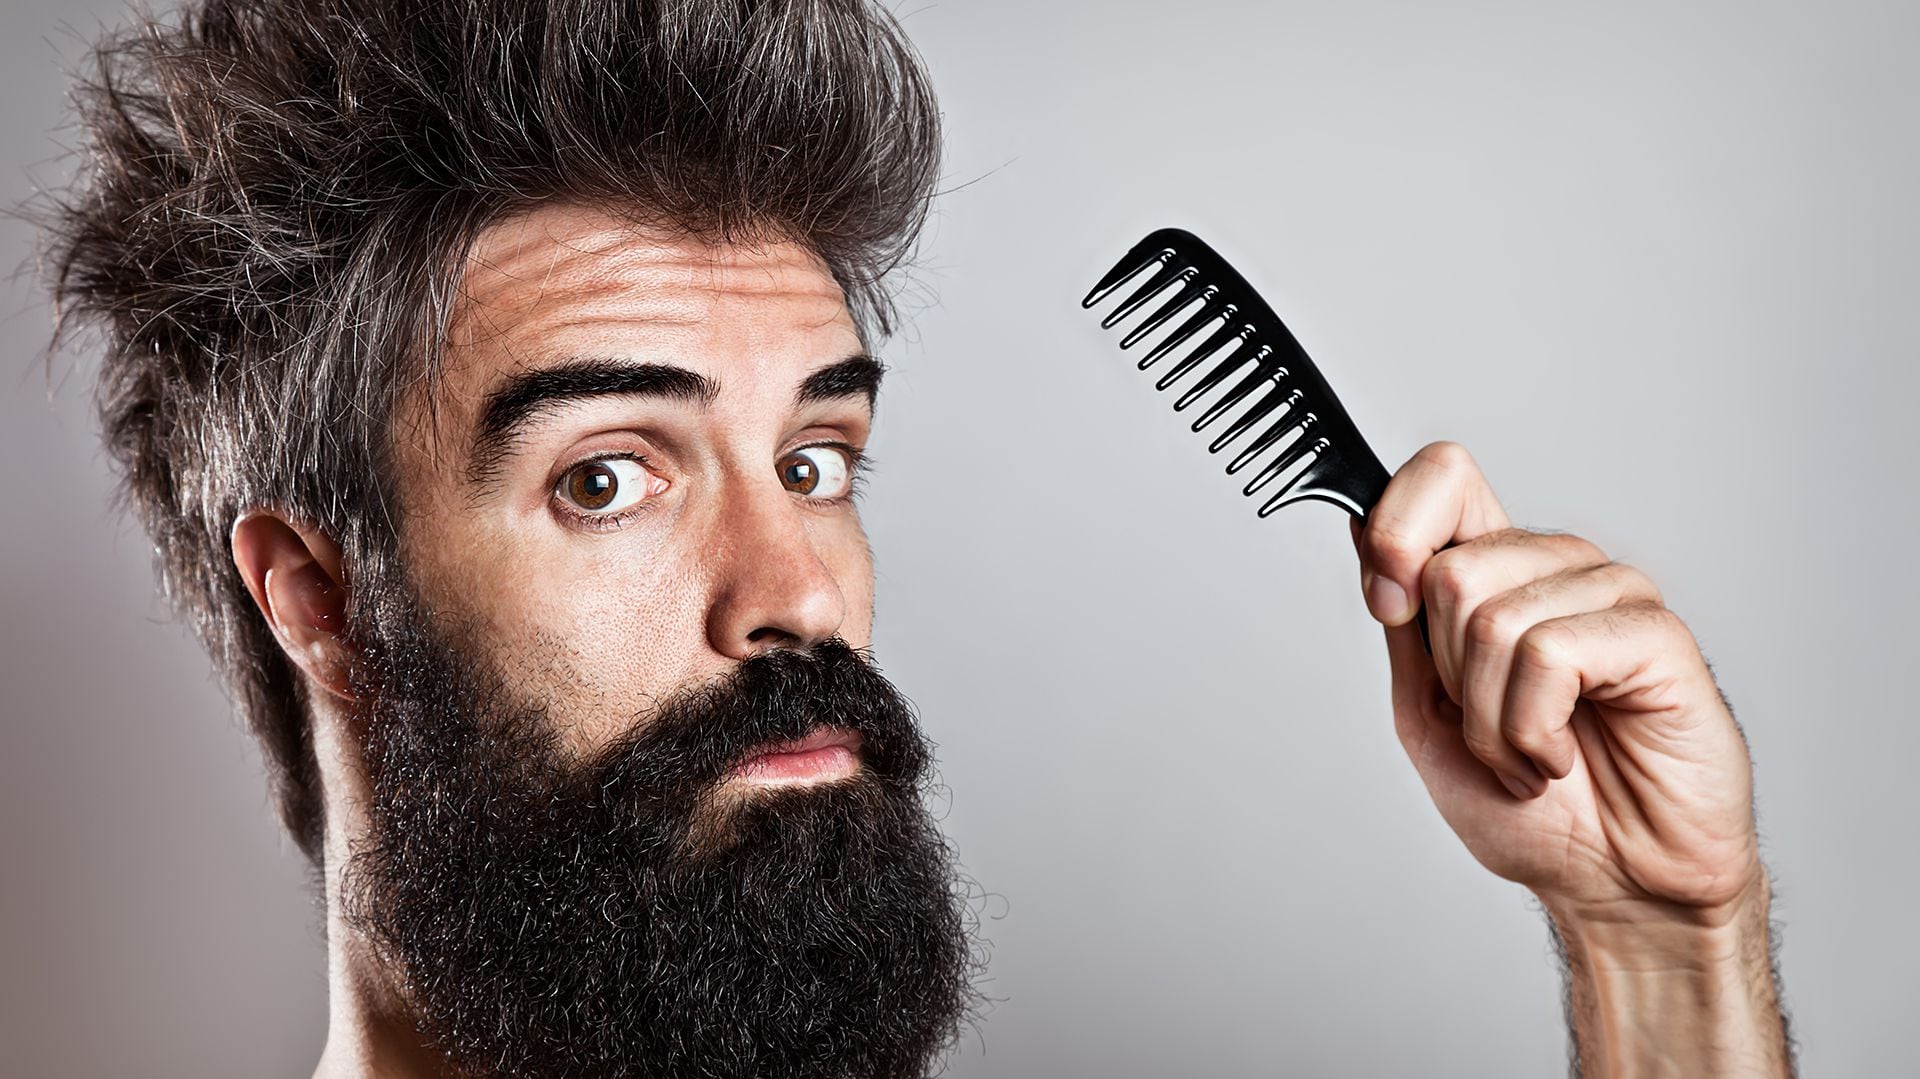 Para los expertos es importante cuidar la barba. "El vello facial necesita hidratación y humectación", dicen (Getty)